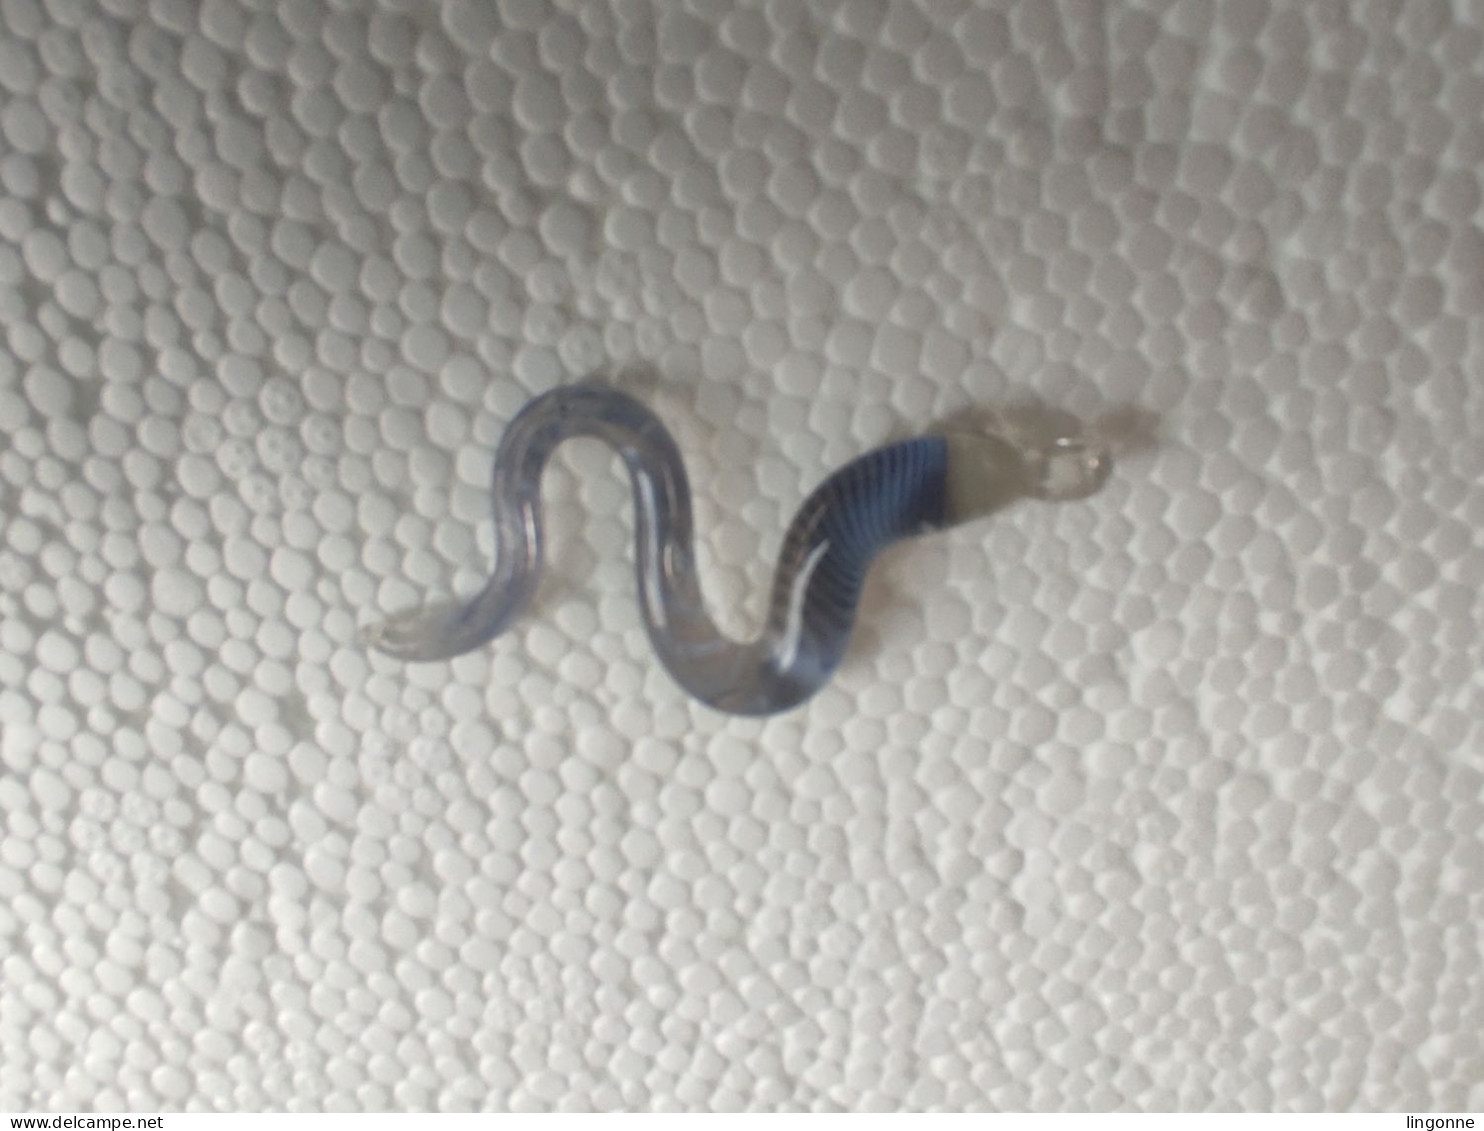 Magnifique pendentif en forme de serpent, qui semble être fait de verre ou de cristal  Long 5,2 cm env Poids 3,30 Grs